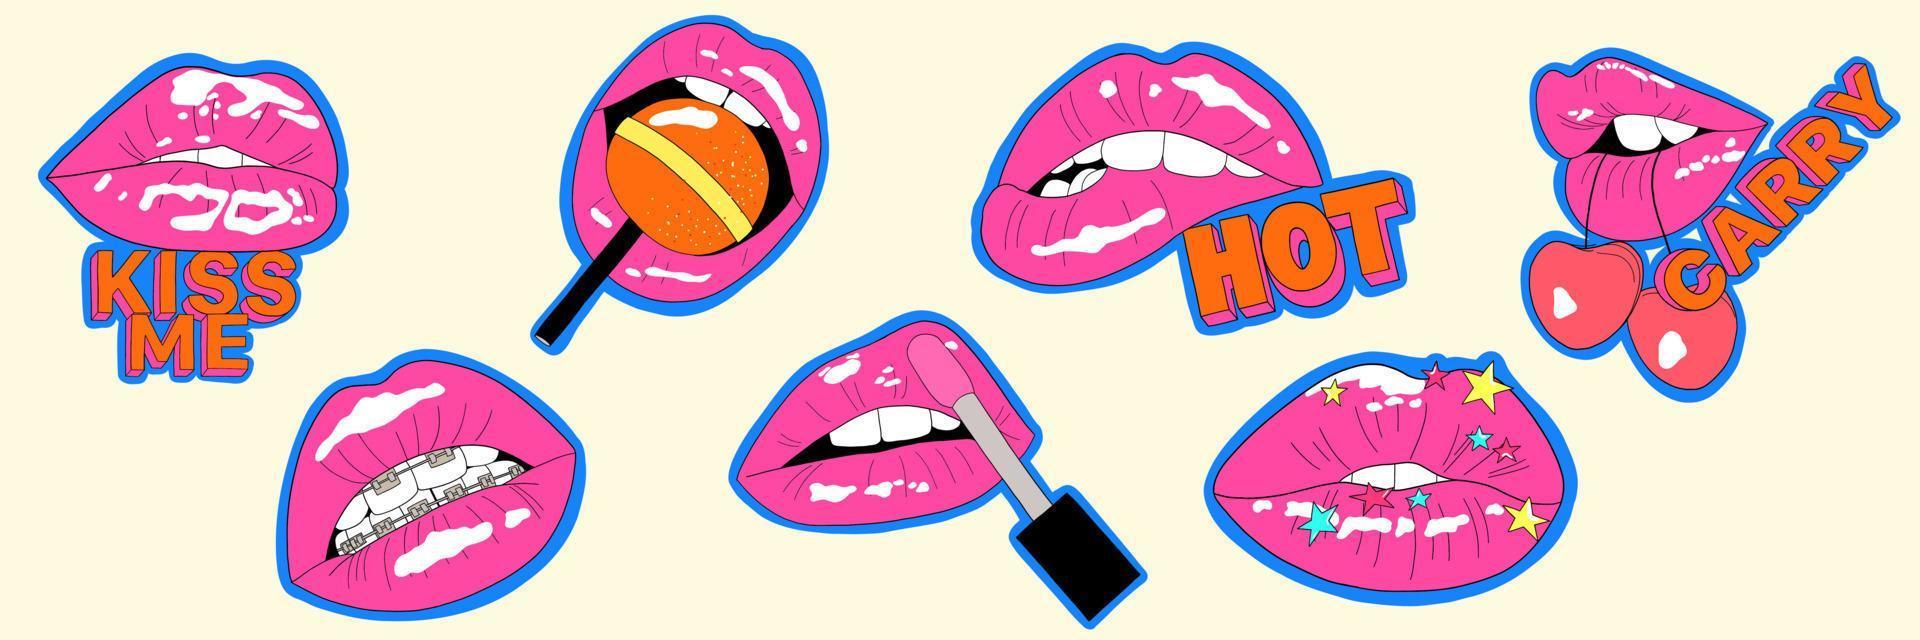 conjunto de adesivos de lábios fofos em quadrinhos engraçados. ilustração moderna para pôster, cartão postal ou plano de fundo. ilustração vetorial de lábios de arte pop vetor